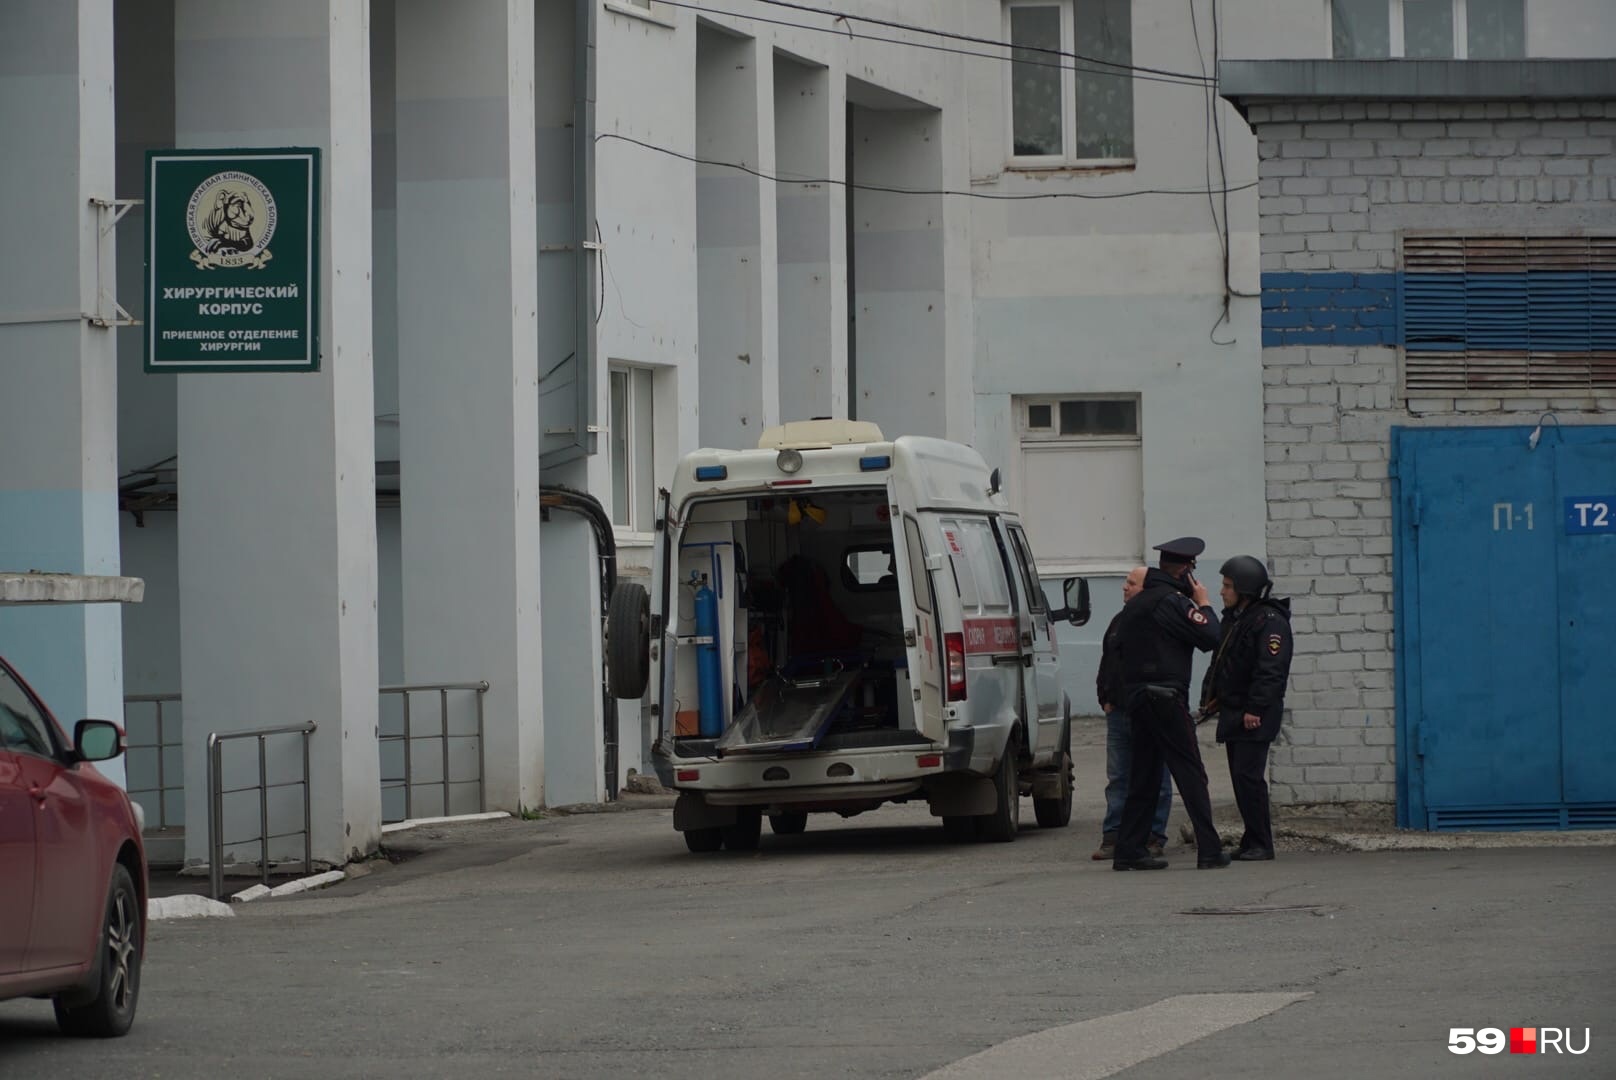 Задержанного доставили в краевую больницу, там сейчас дежурят сотрудники полиции